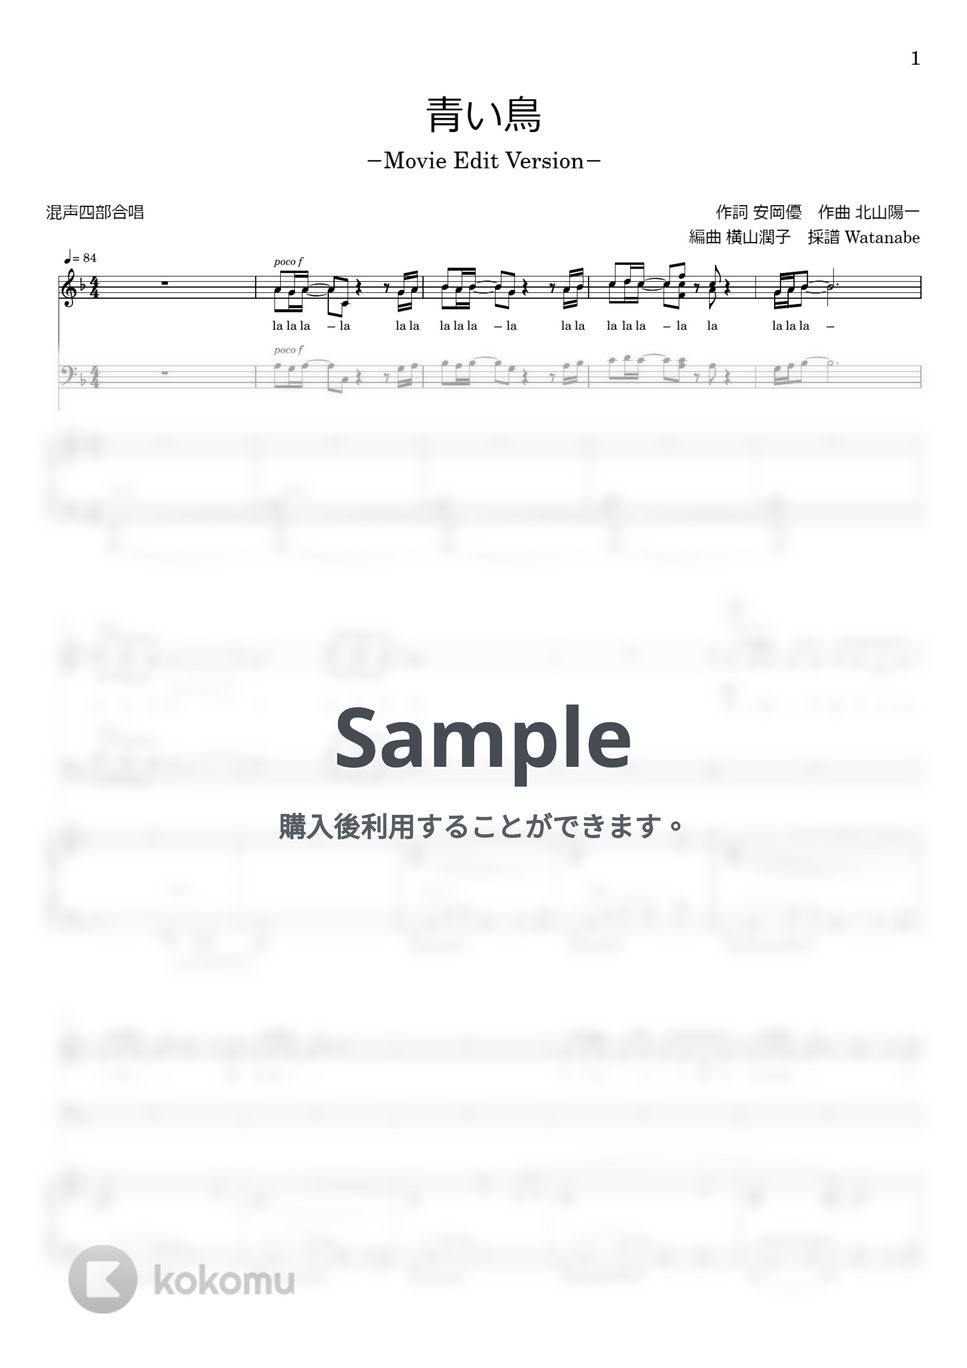 ゴスペラーズ - 青い鳥 (混声四部合唱) by 横山潤子/わたなべももこ